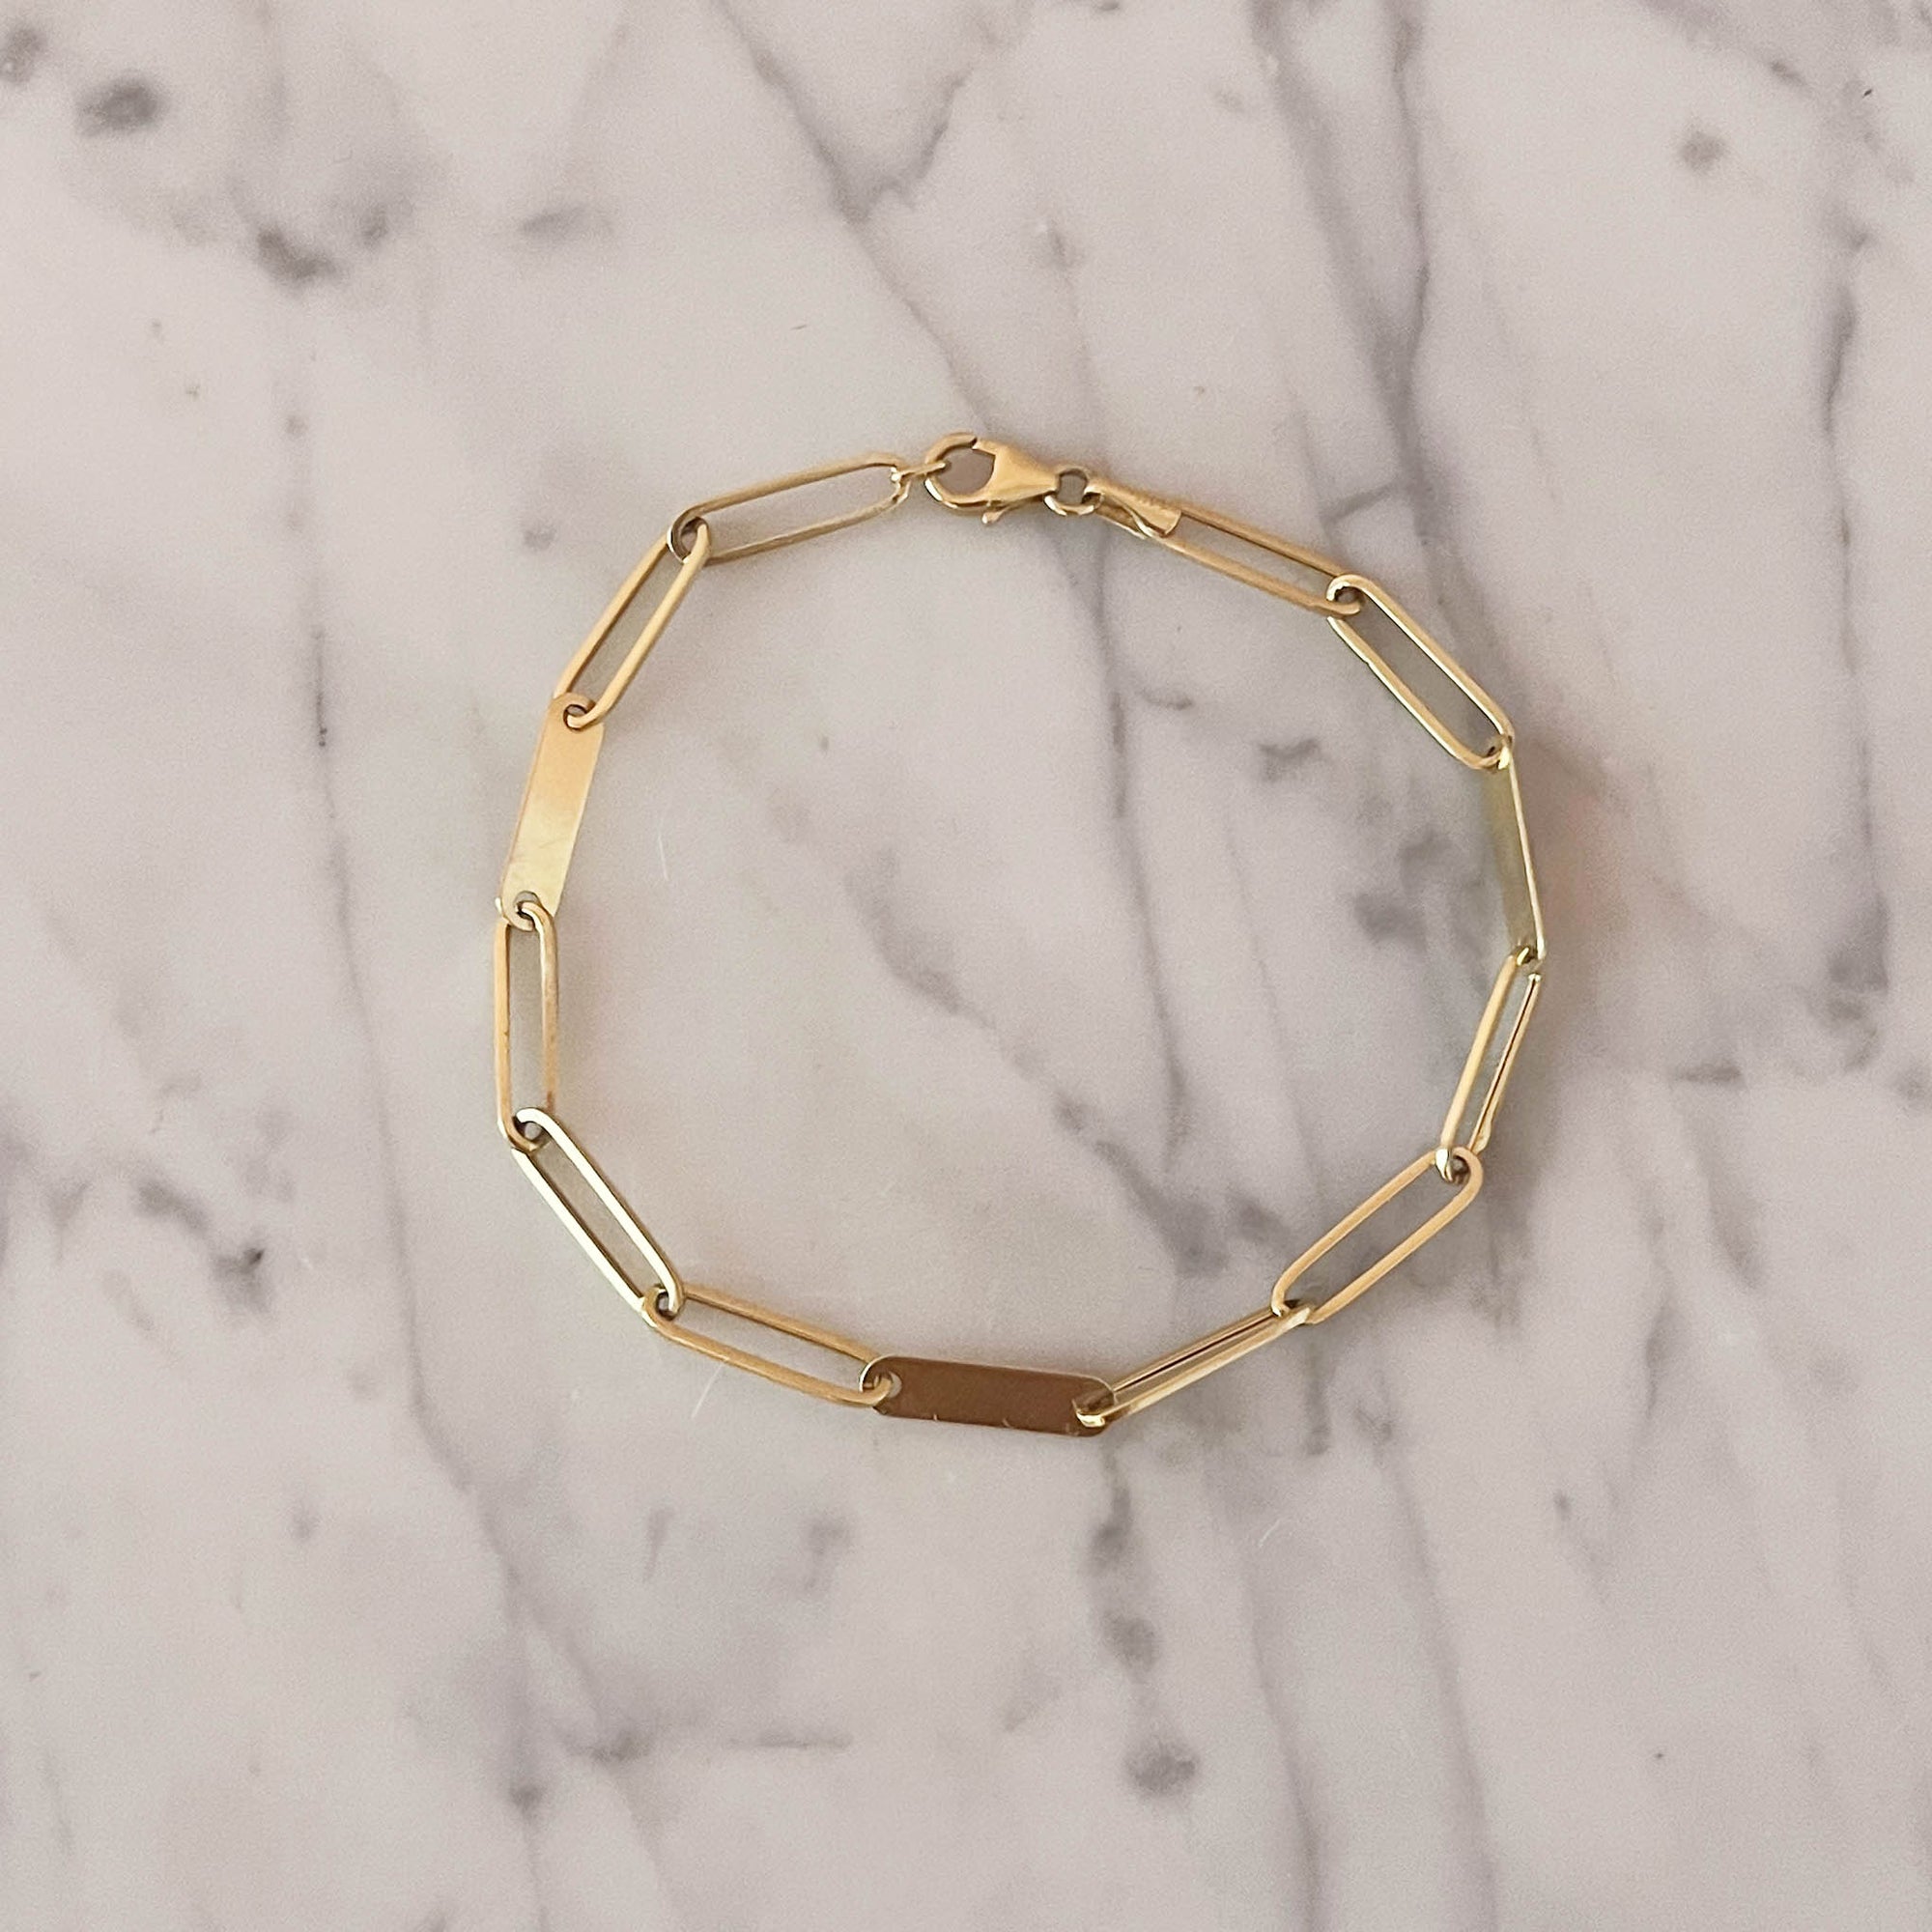 Solid Gold Paper Clip Bracelet for Sale